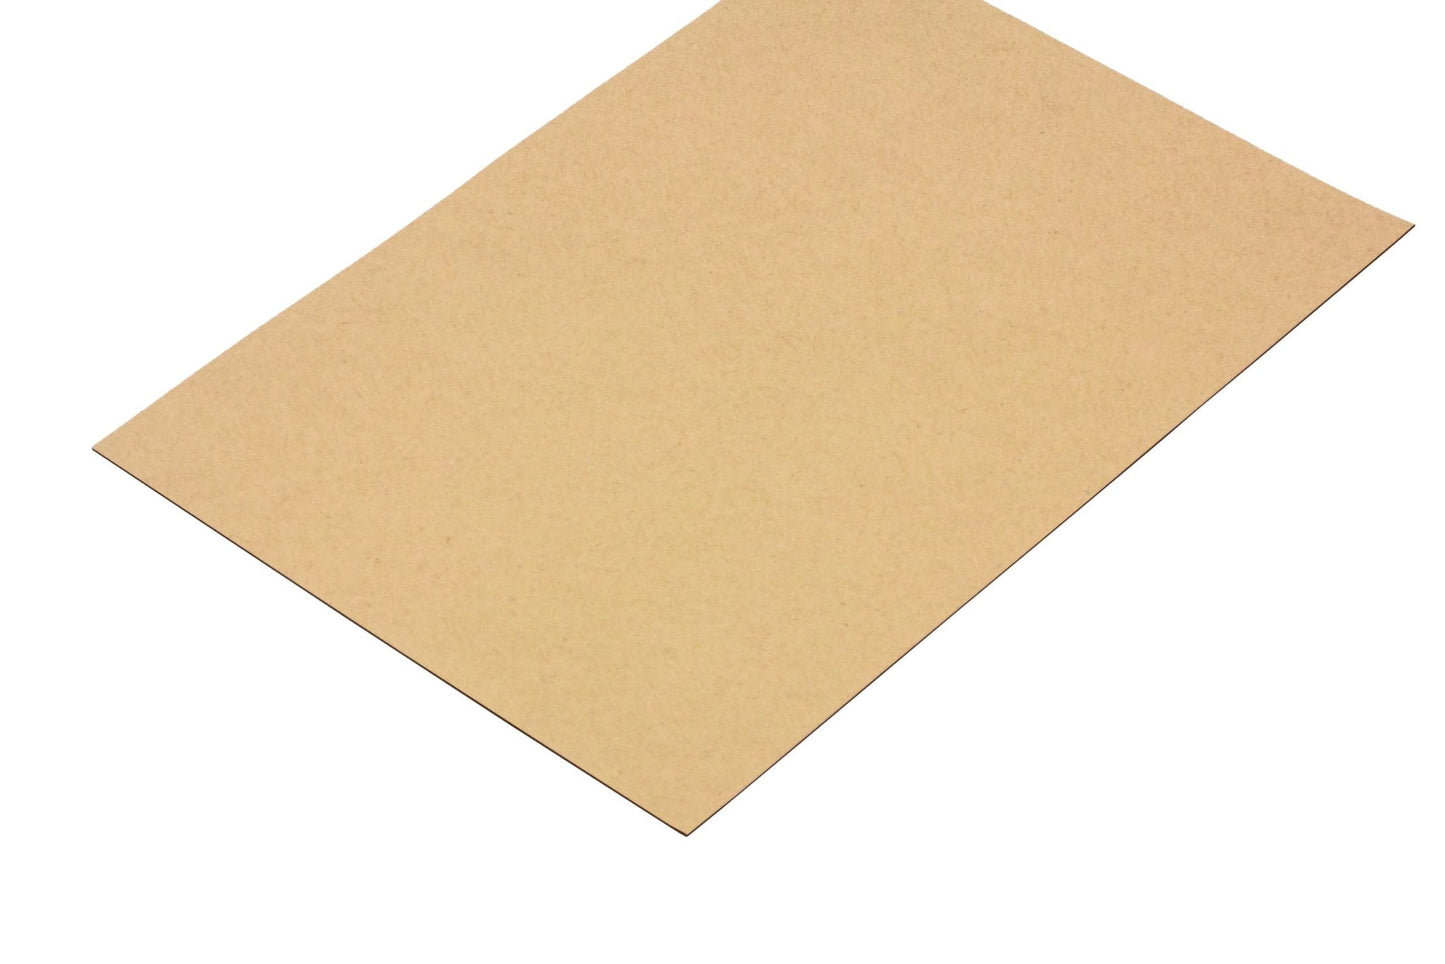 Pakkingpapier 2.0 mm - Lasersheets